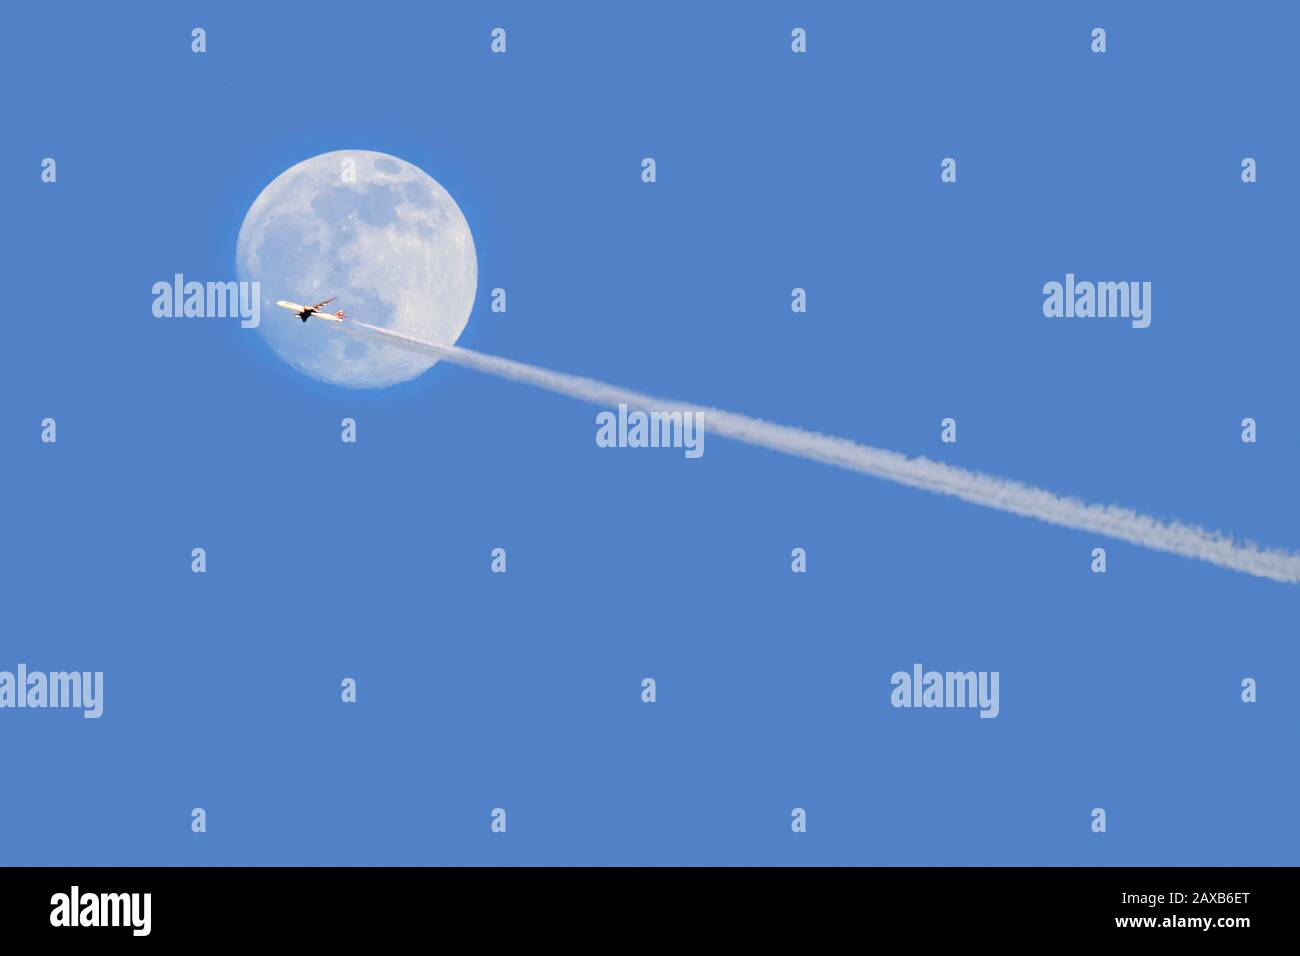 Avion de ligne commercial / avion de passagers volant en face de la pleine lune au crépuscule montrant des contrelles / des sentiers de condensation Banque D'Images